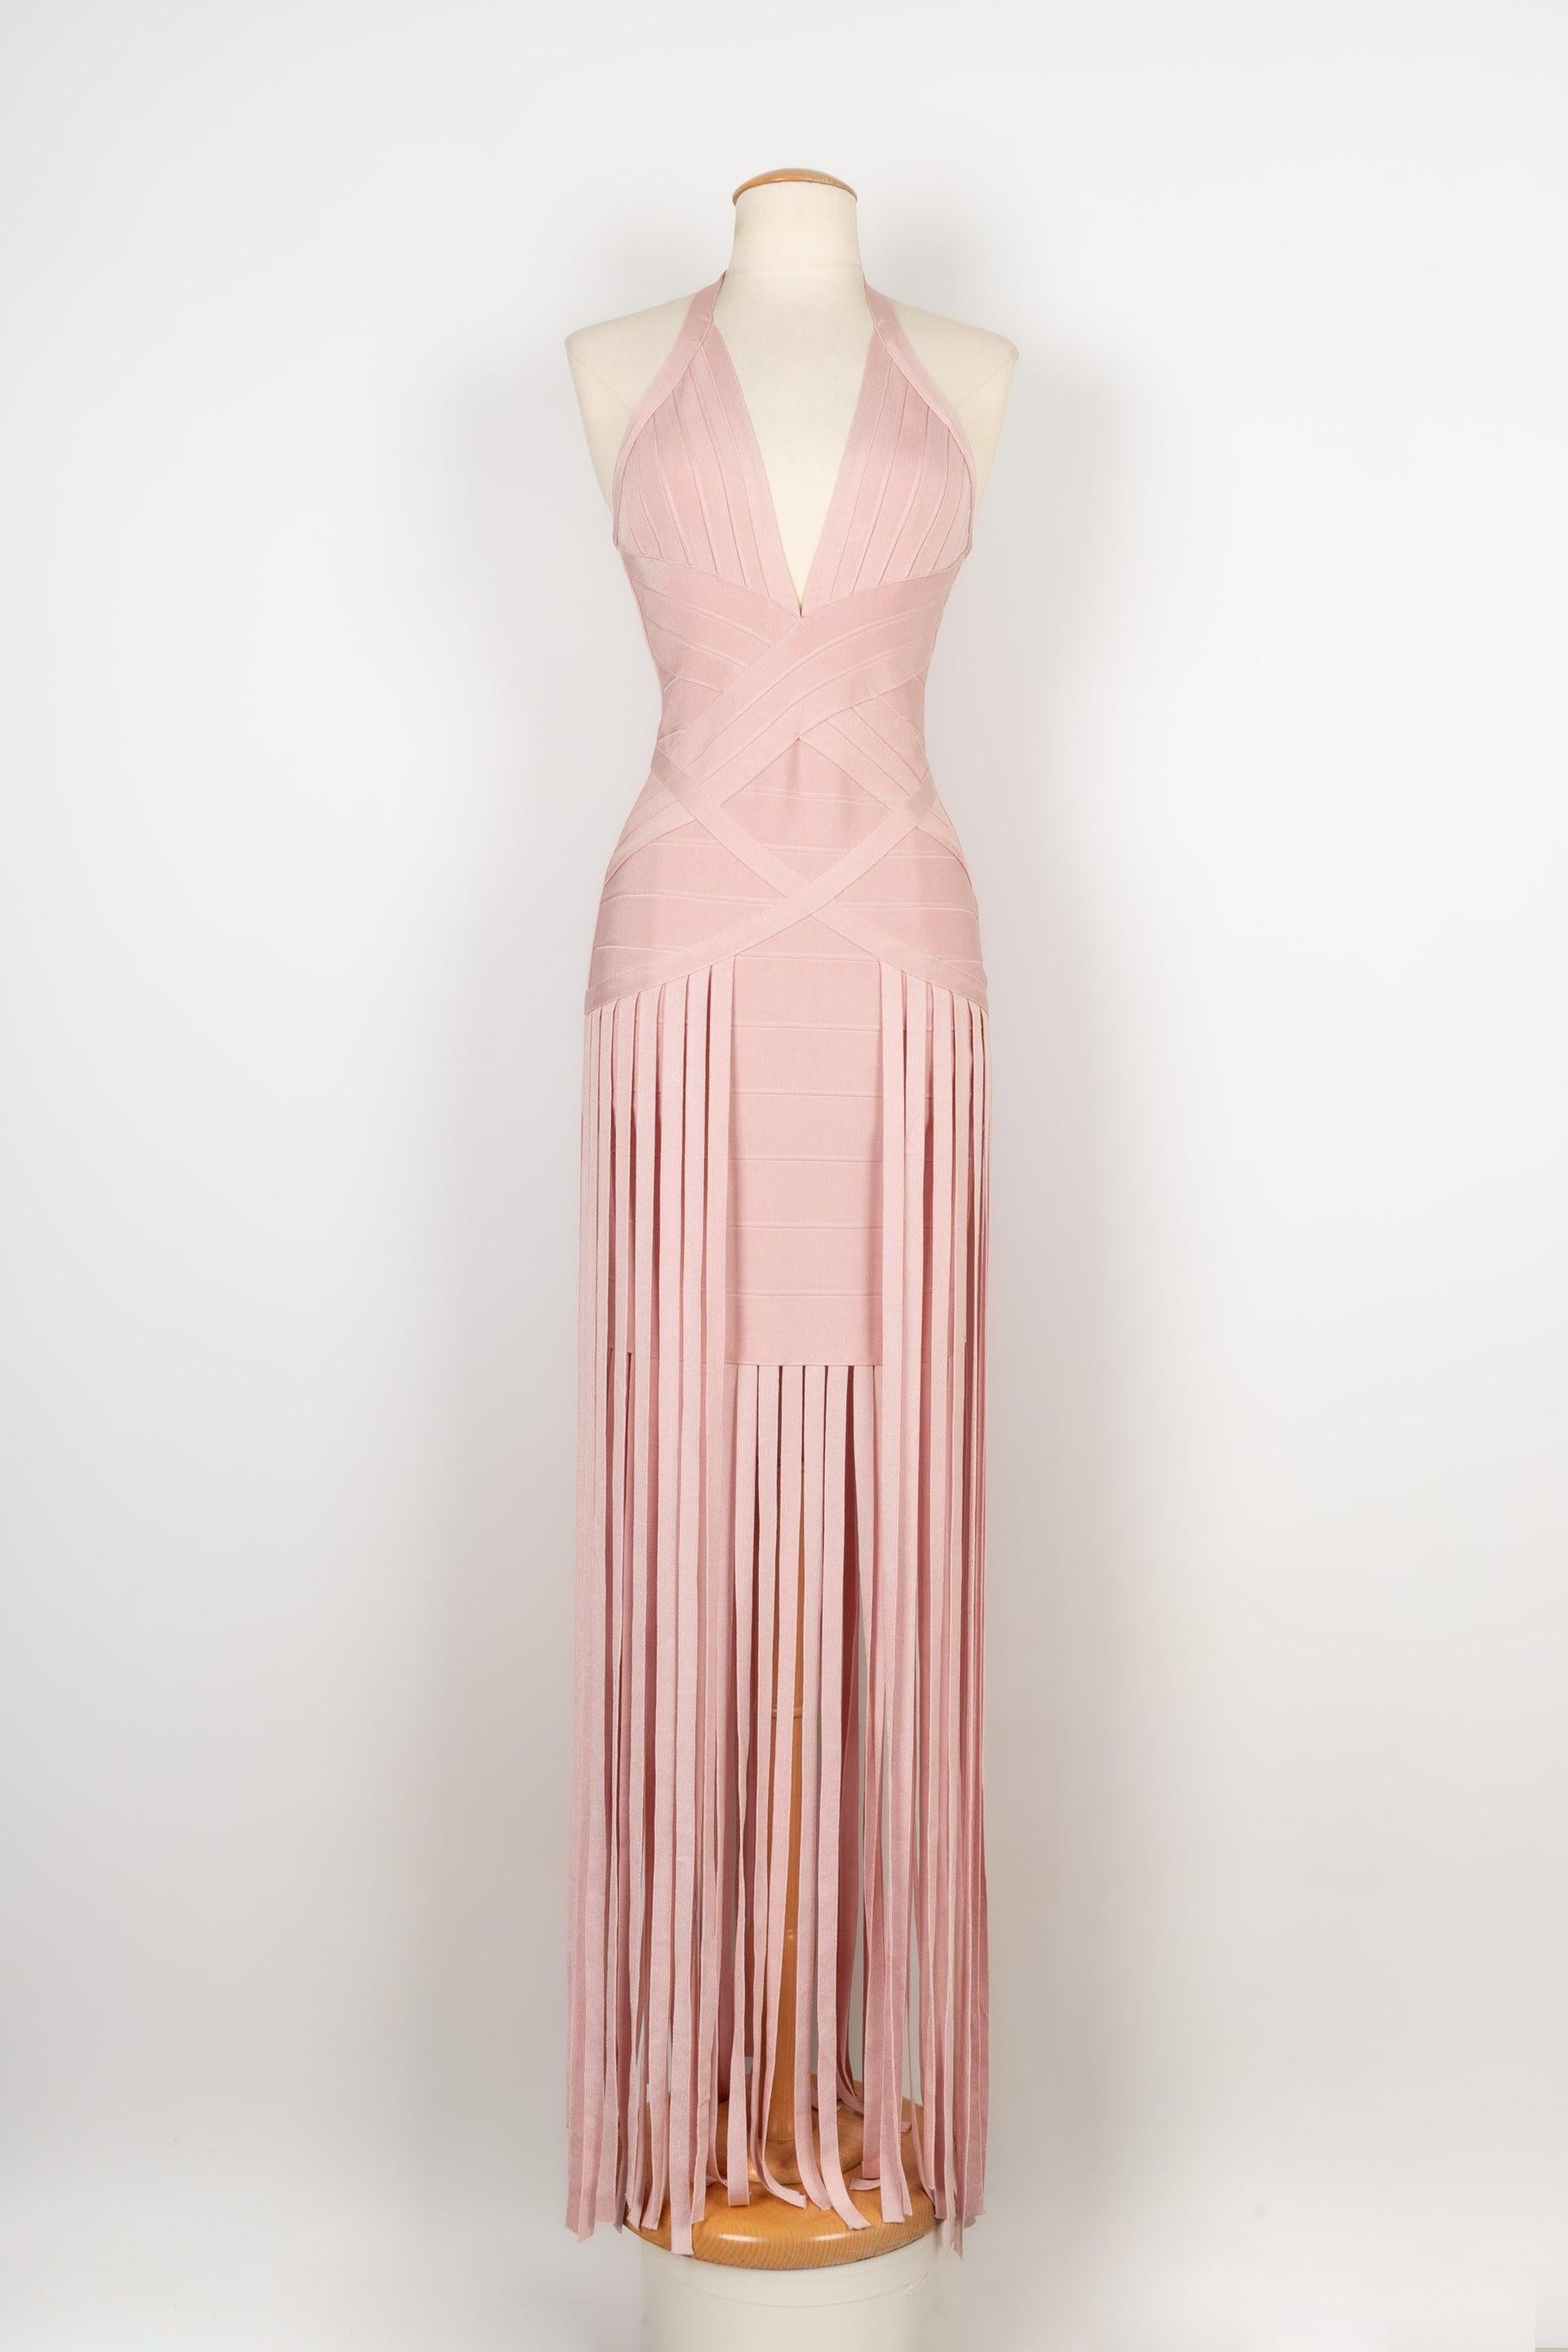 Hervé Léger Elasticated Powder Pink Dress For Sale